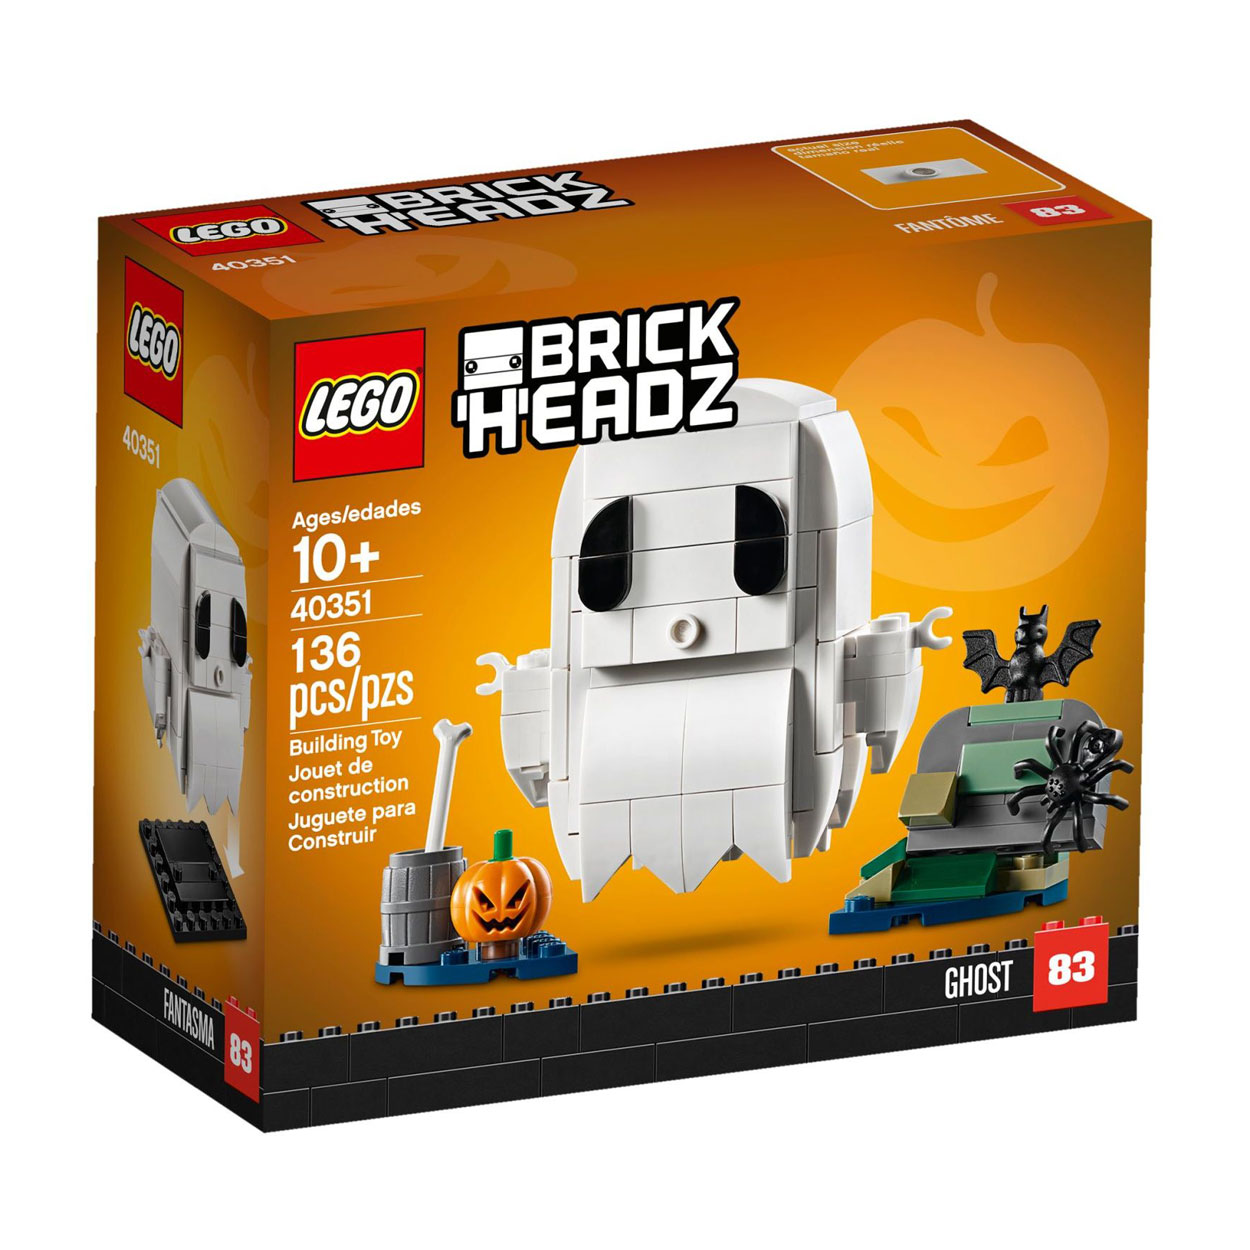 LEGO® BrickHeadz 40351 Halloween-Gespenst günstig kaufen | brickstore.at
